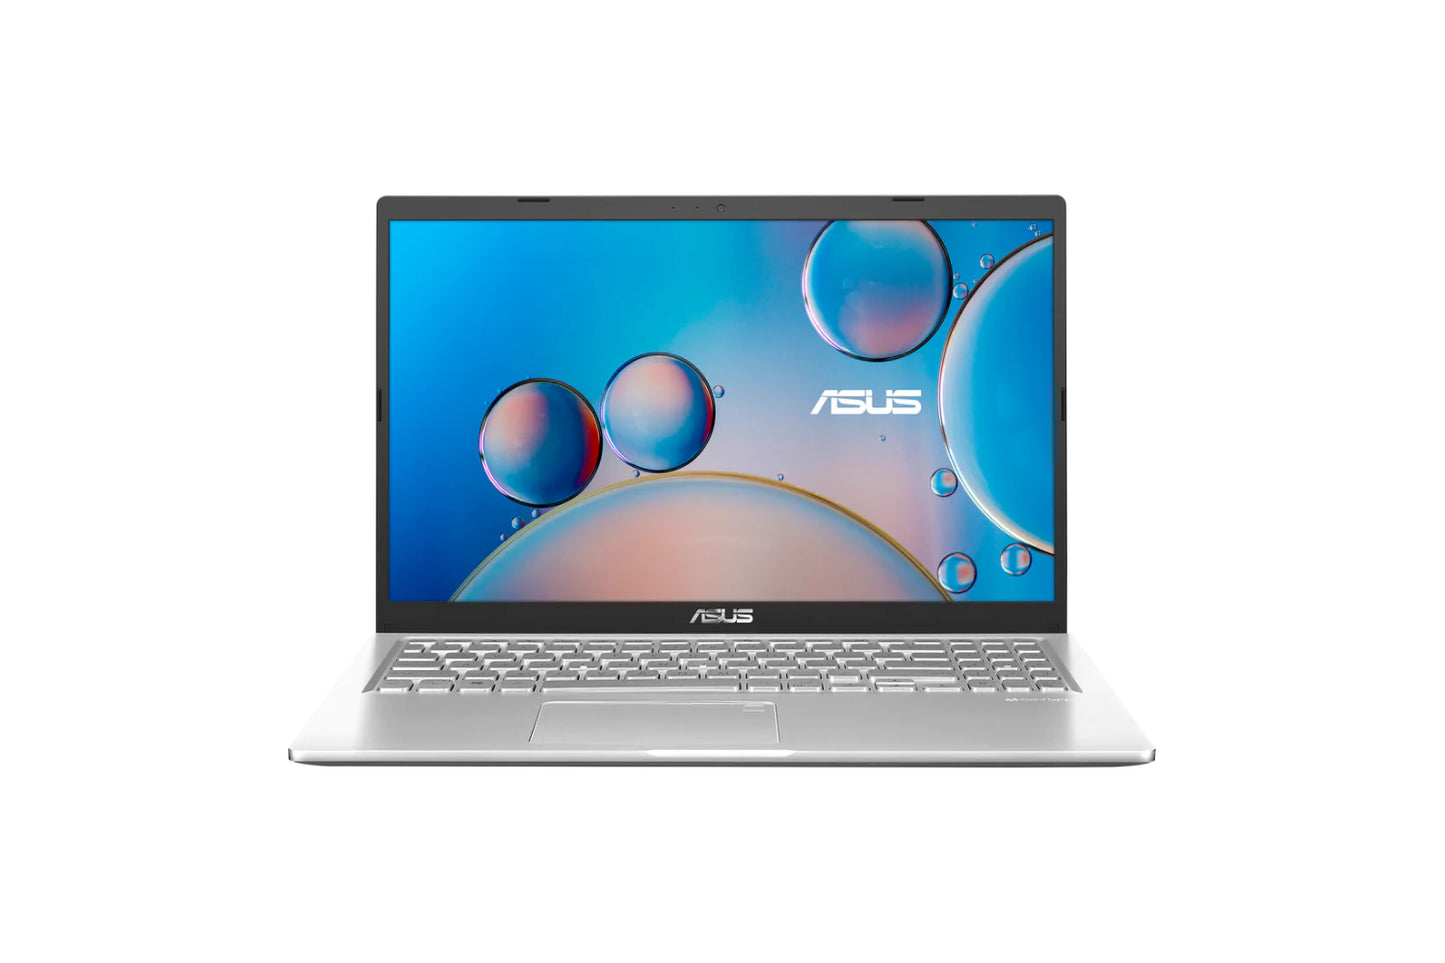 Asus M515U AMD R5-5500U  512GB  pcie ssd win 10 8GB RAM 15.6 inch HD Transparent silver Laptop